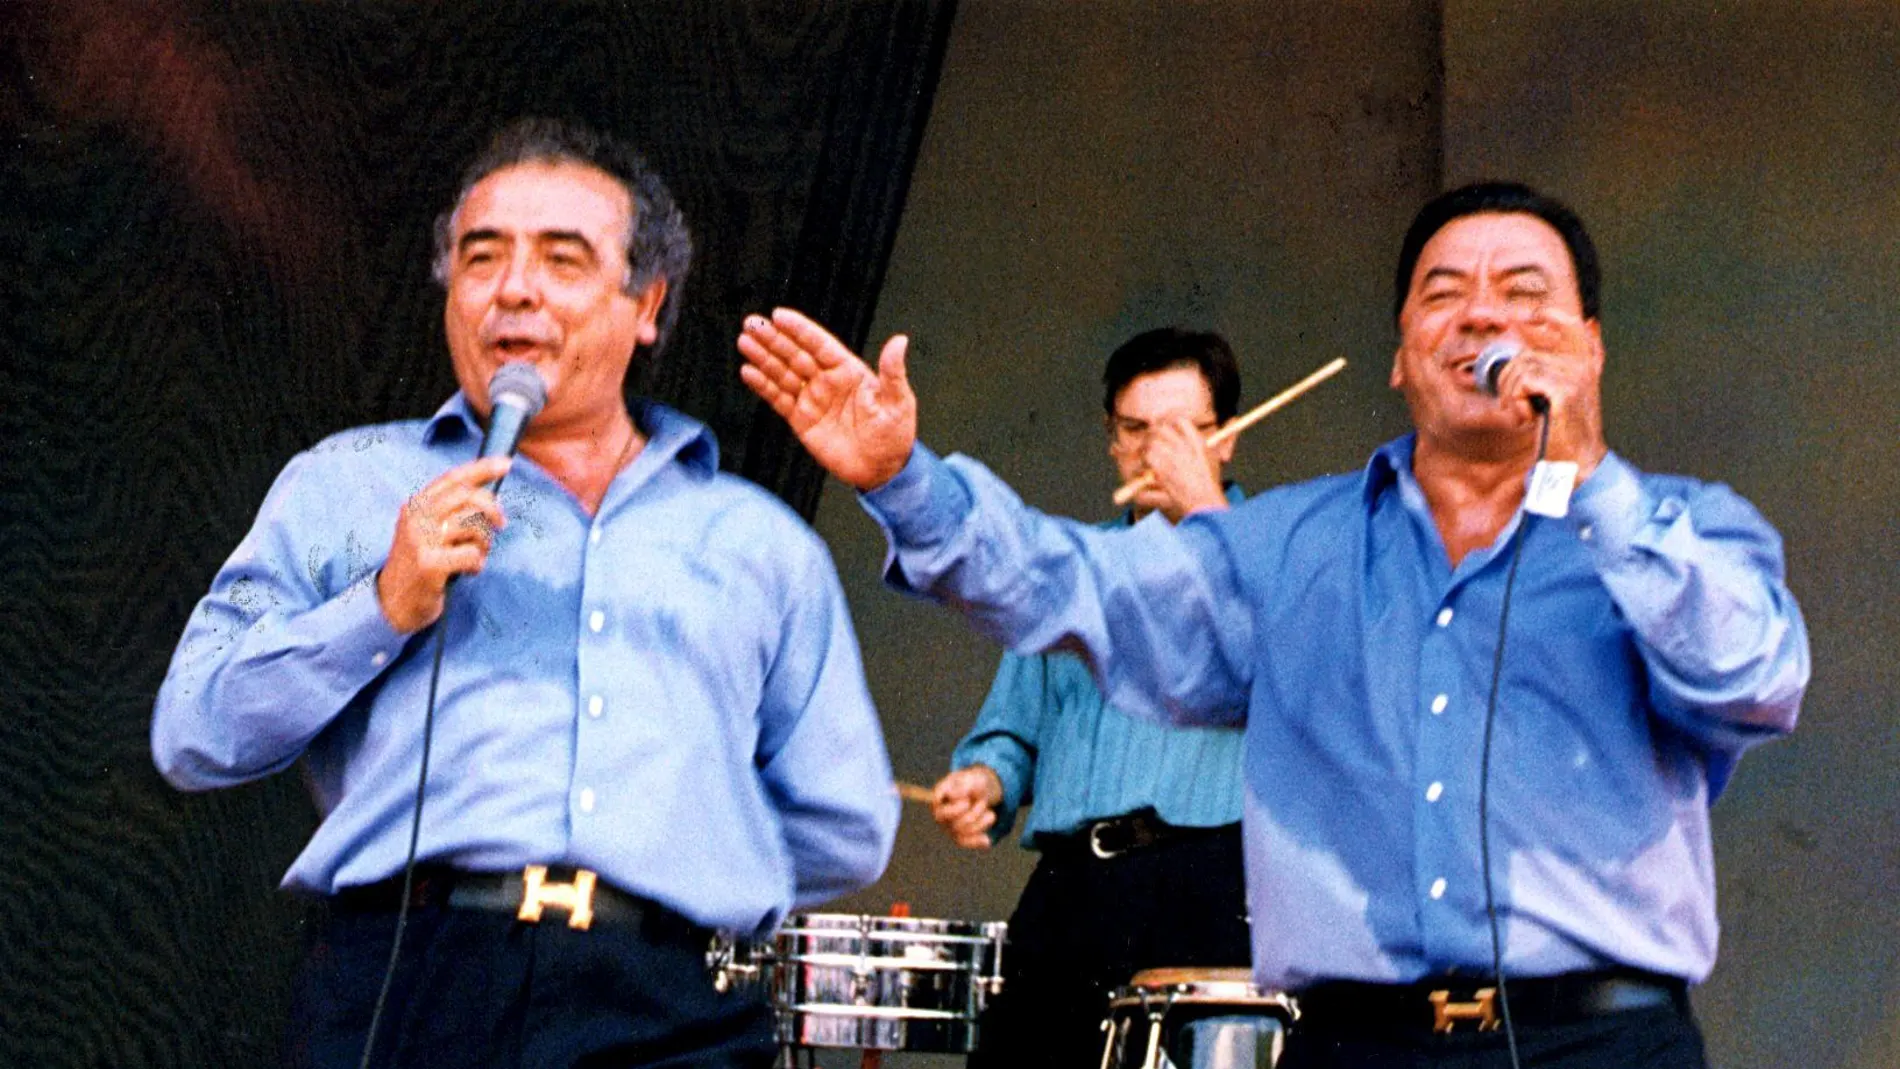 Antonio Romero Monge y Rafael Ruiz Perdigones, "Los del Río", padres de "La Macarena"